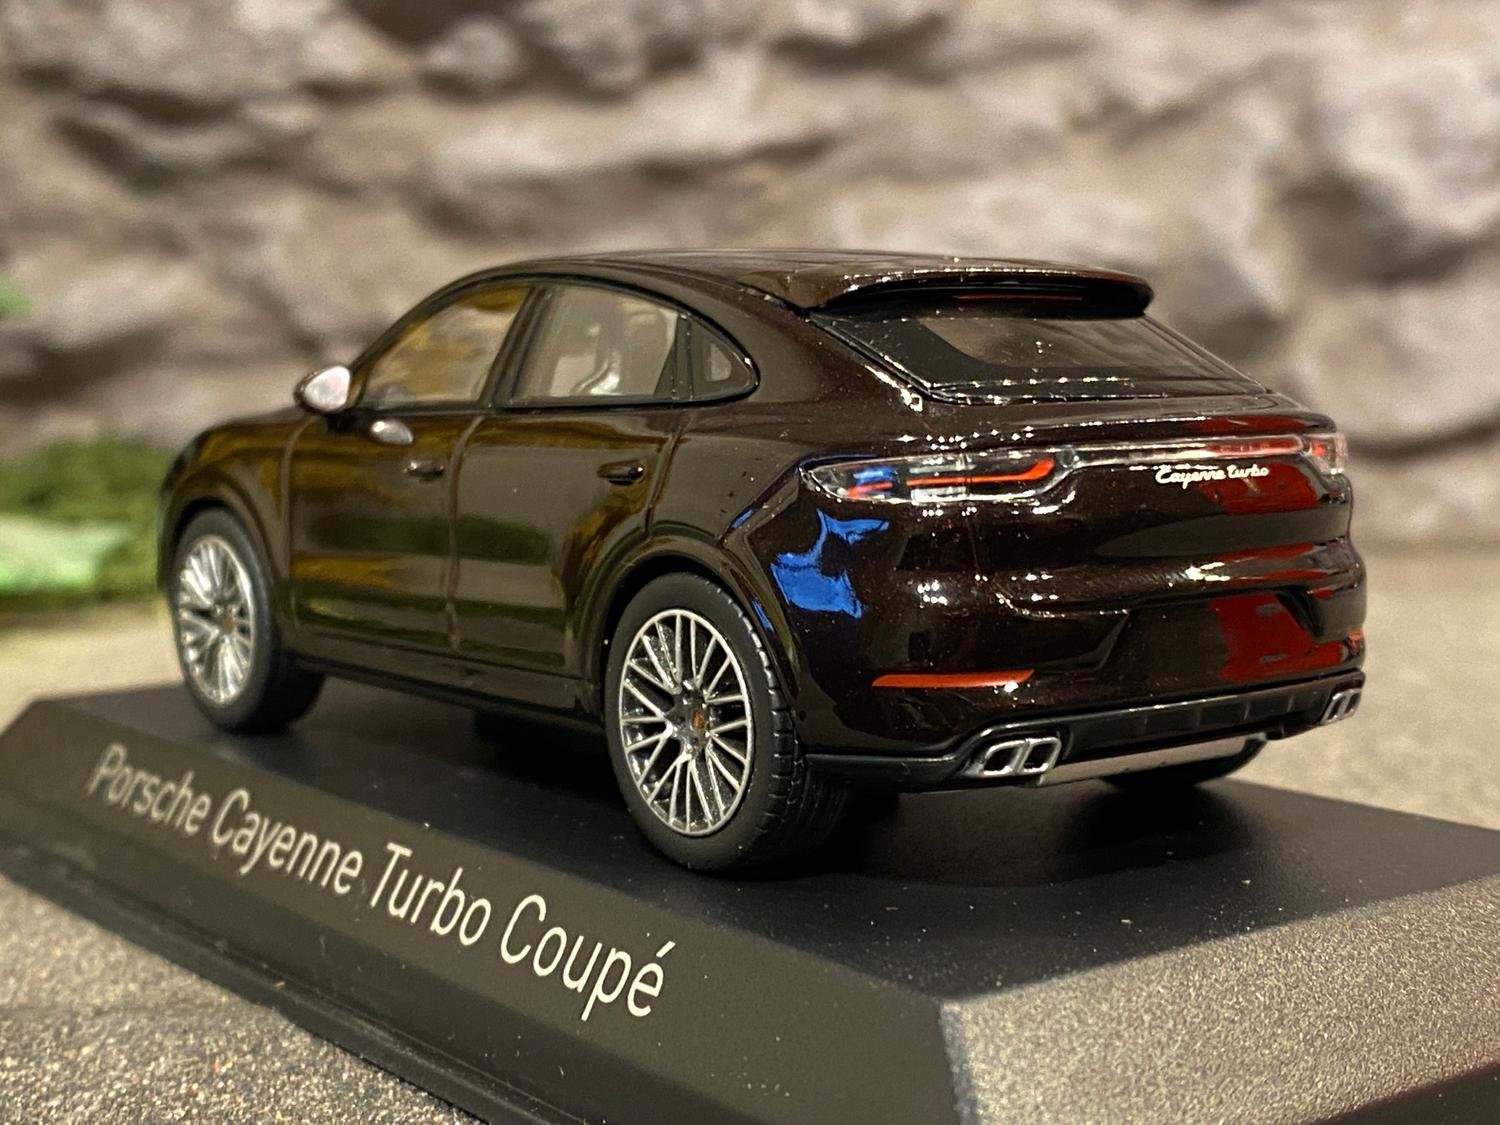 Skala 1/43 - 2019 Porsche Cayenne Turbo Coupé, Brun metallic, från NOREV